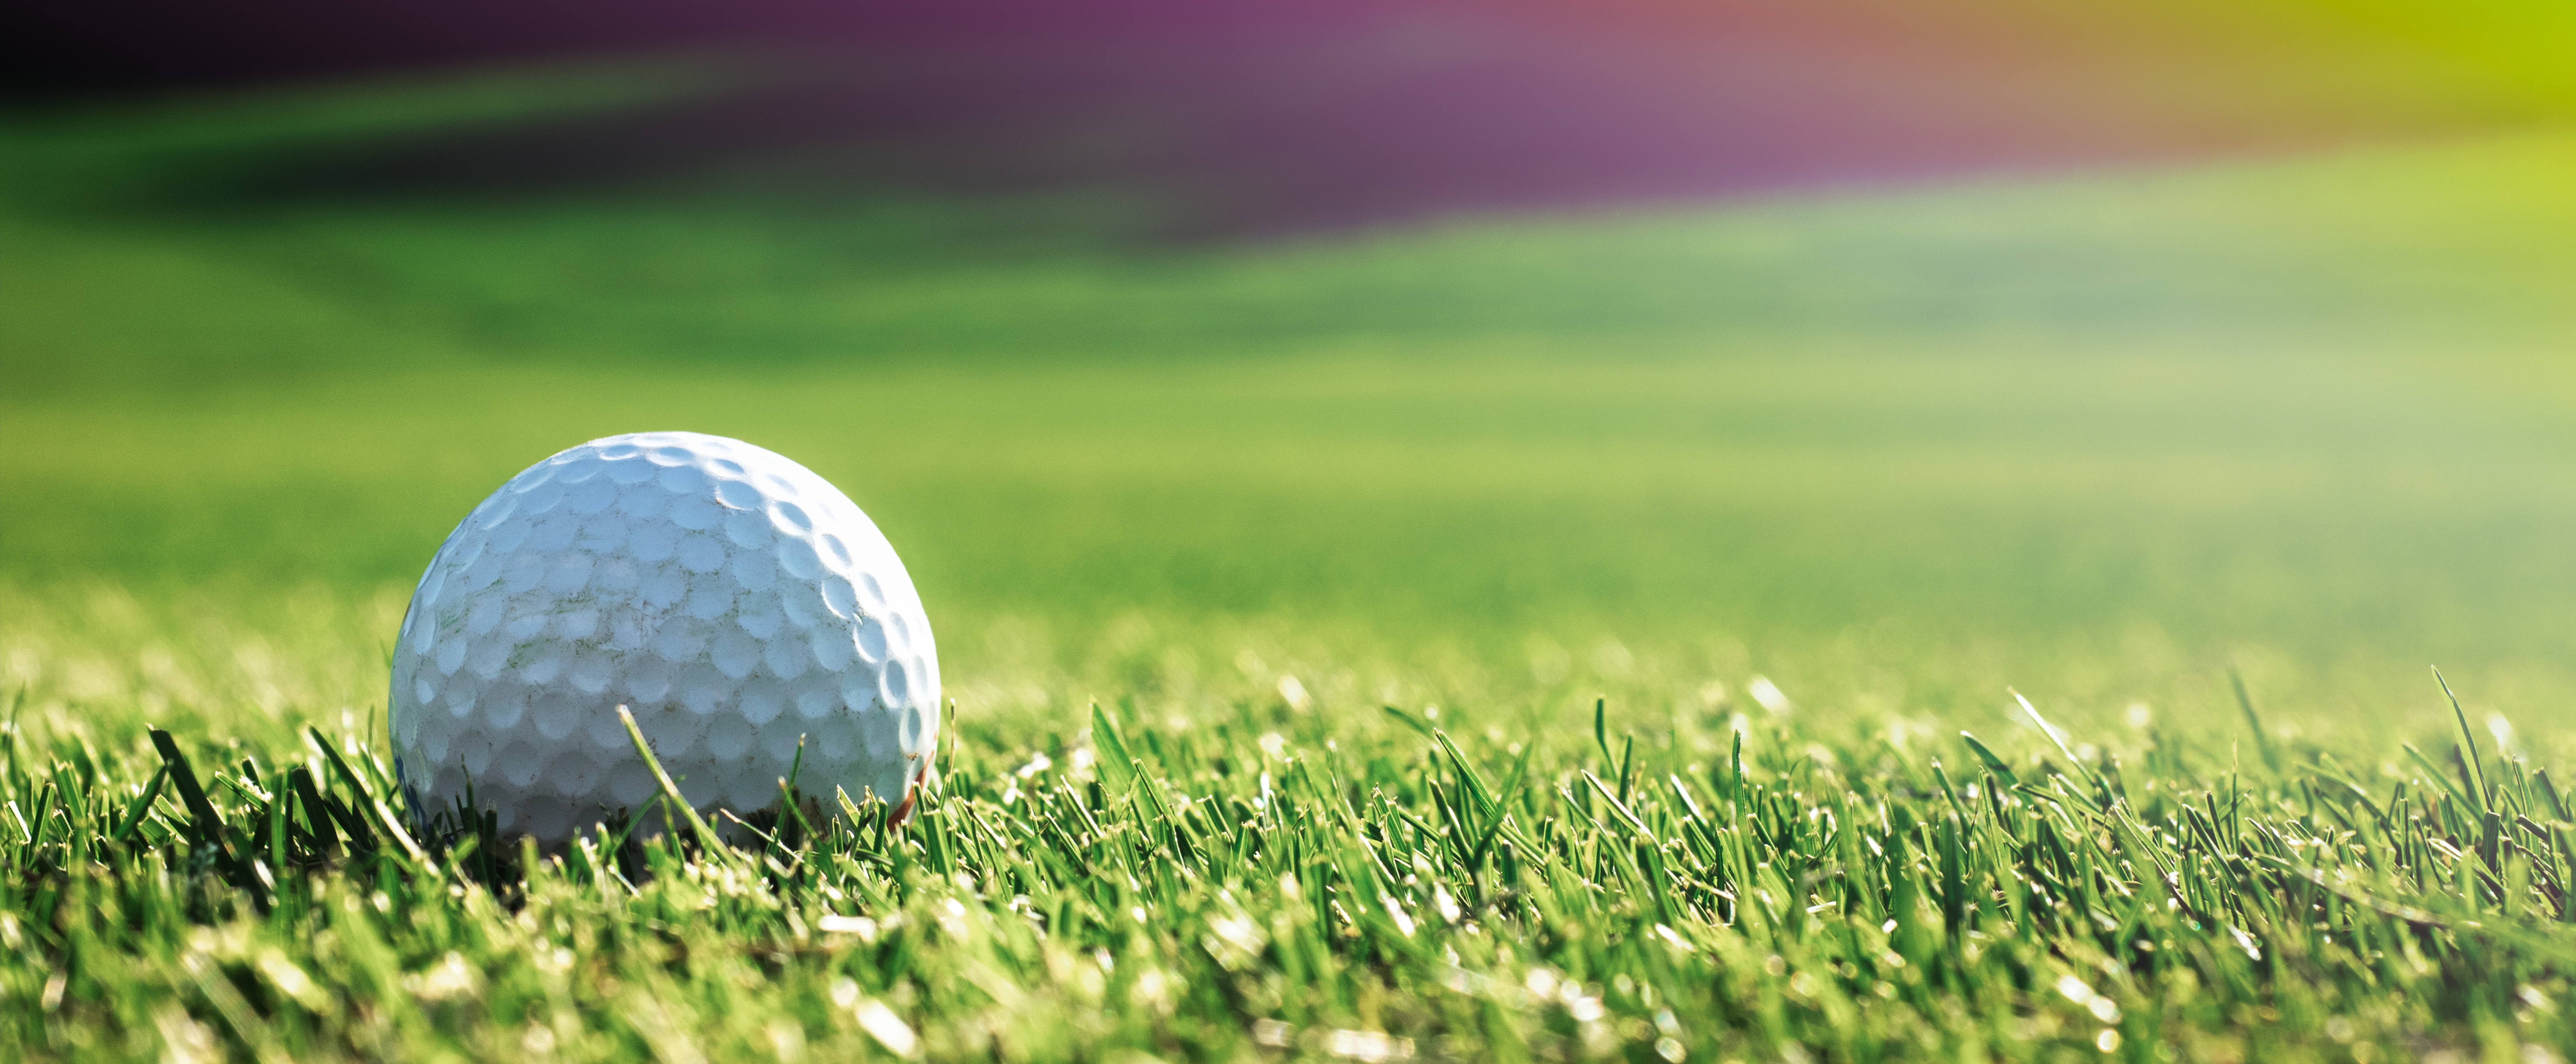 Golf_Tournament_Web_Banner.jpg